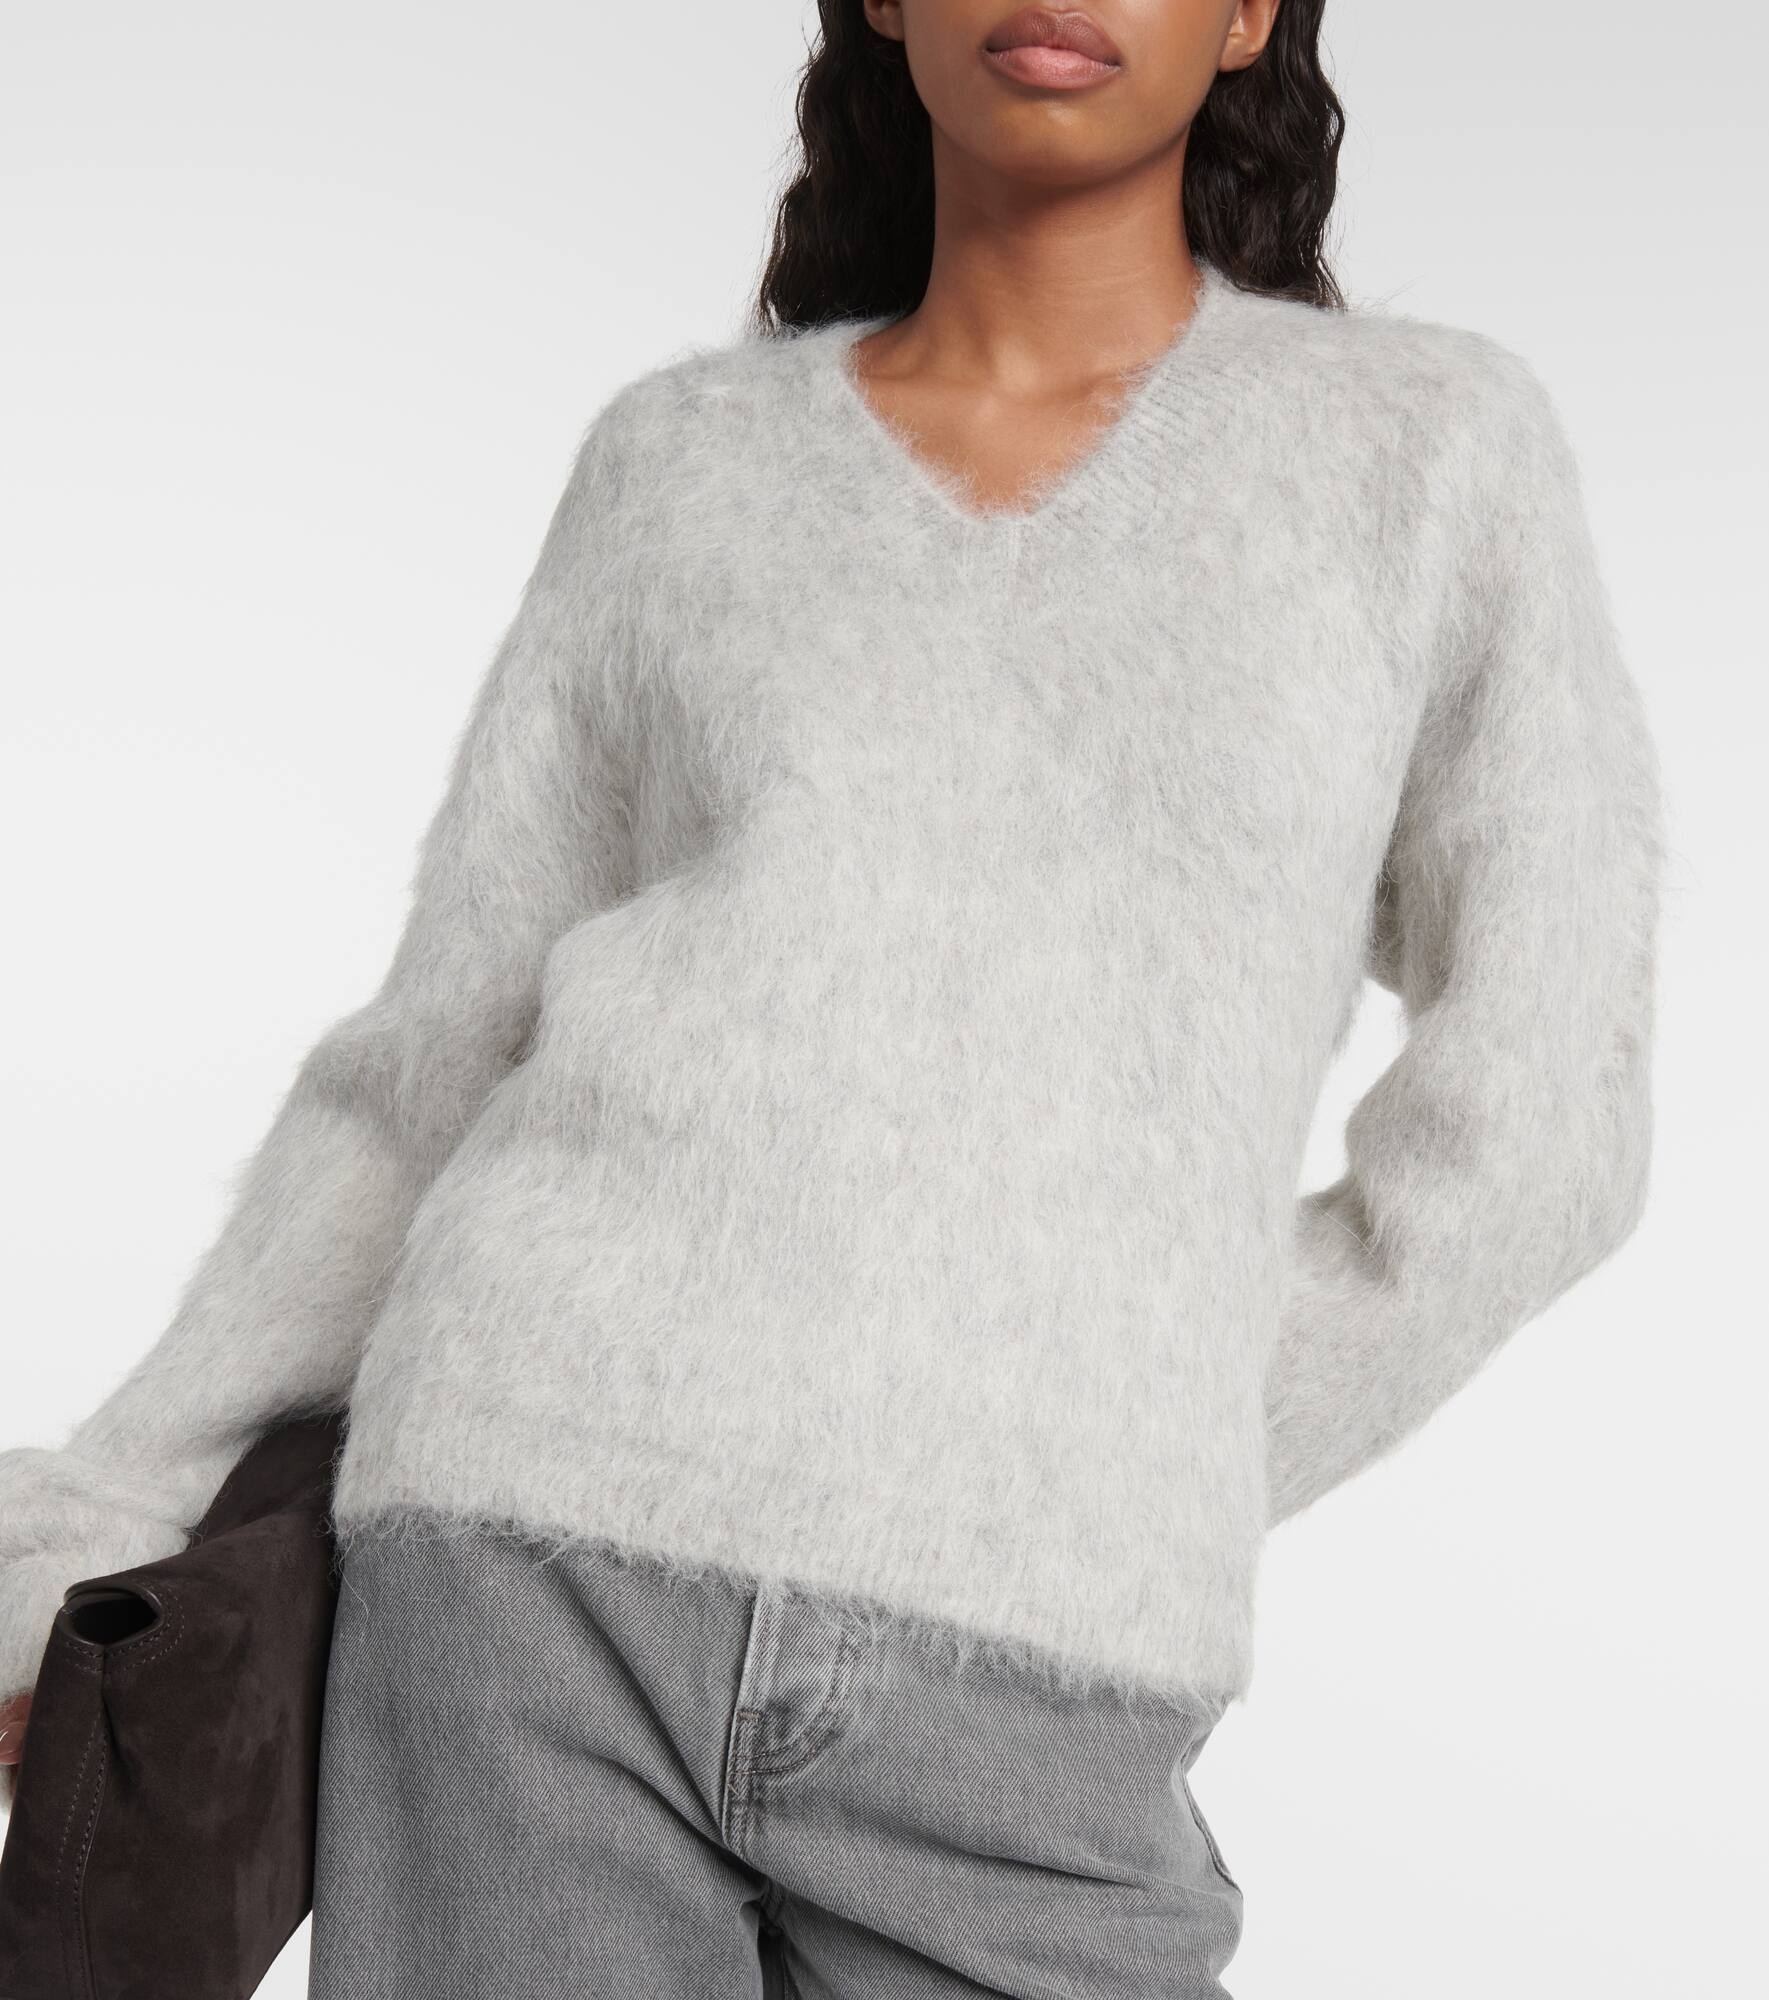 Alpaca-blend sweater - 6